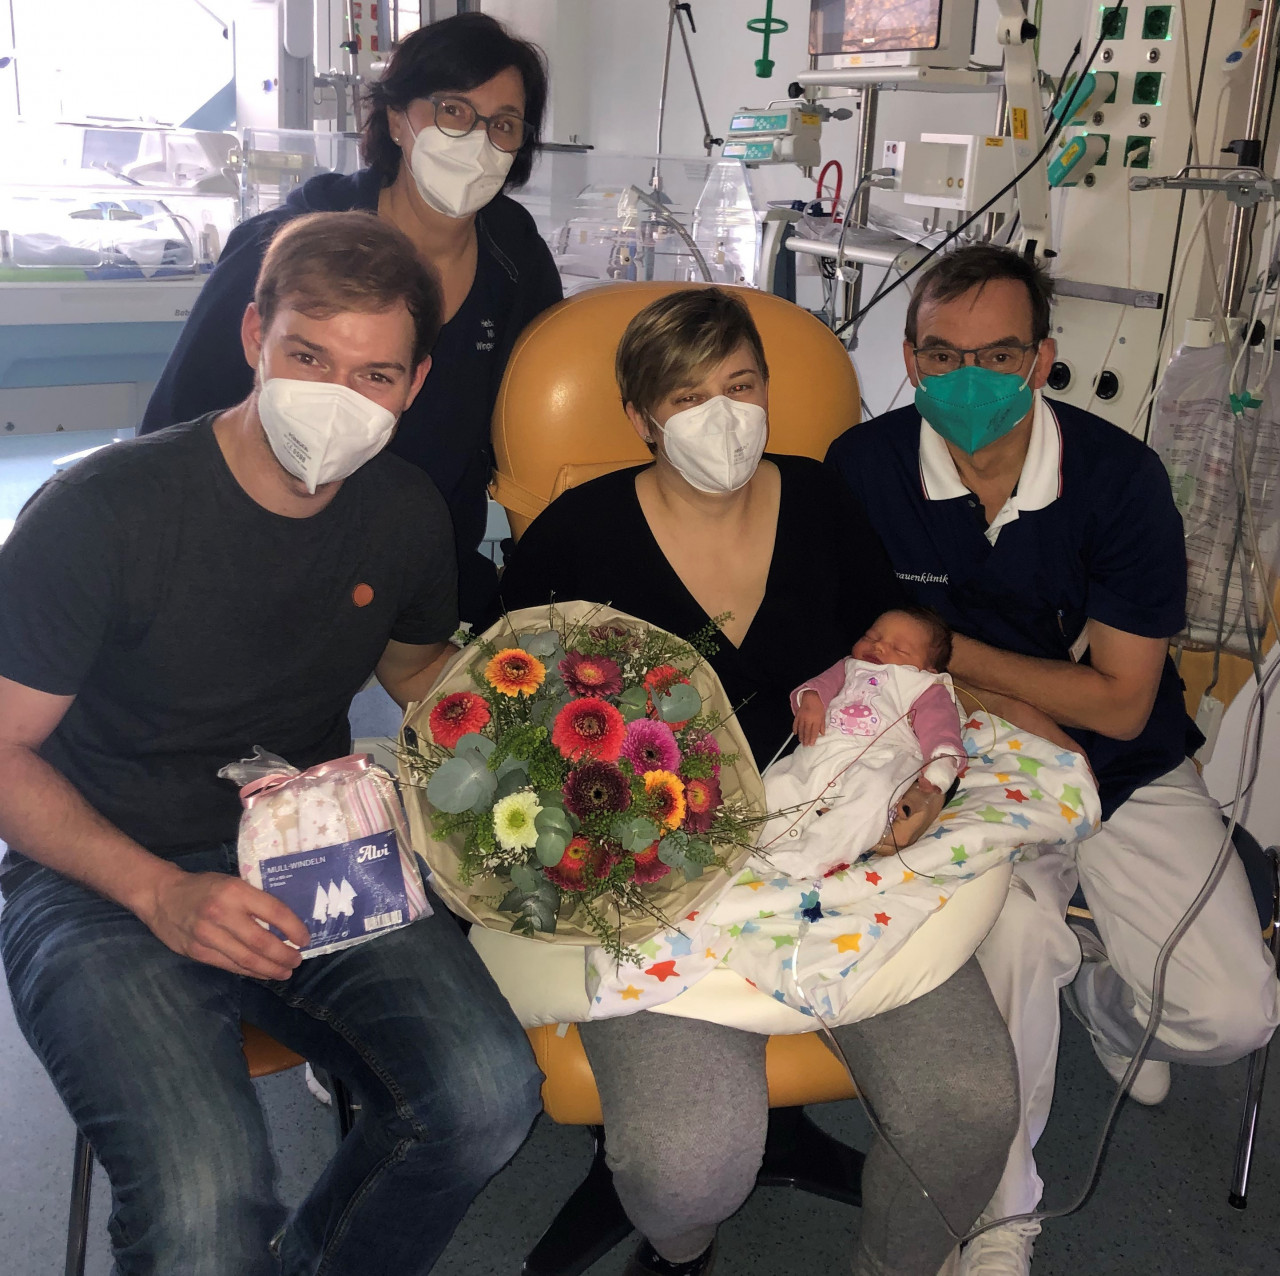 Chefarzt Dr. med. Bernd-Dieter Stutz überreichte einen Blumenstrauß und ein Präsent für Mathilda.
Mit ihren Eltern freute sich das gesamte Team des Vinzentius-Krankenhauses Landau.